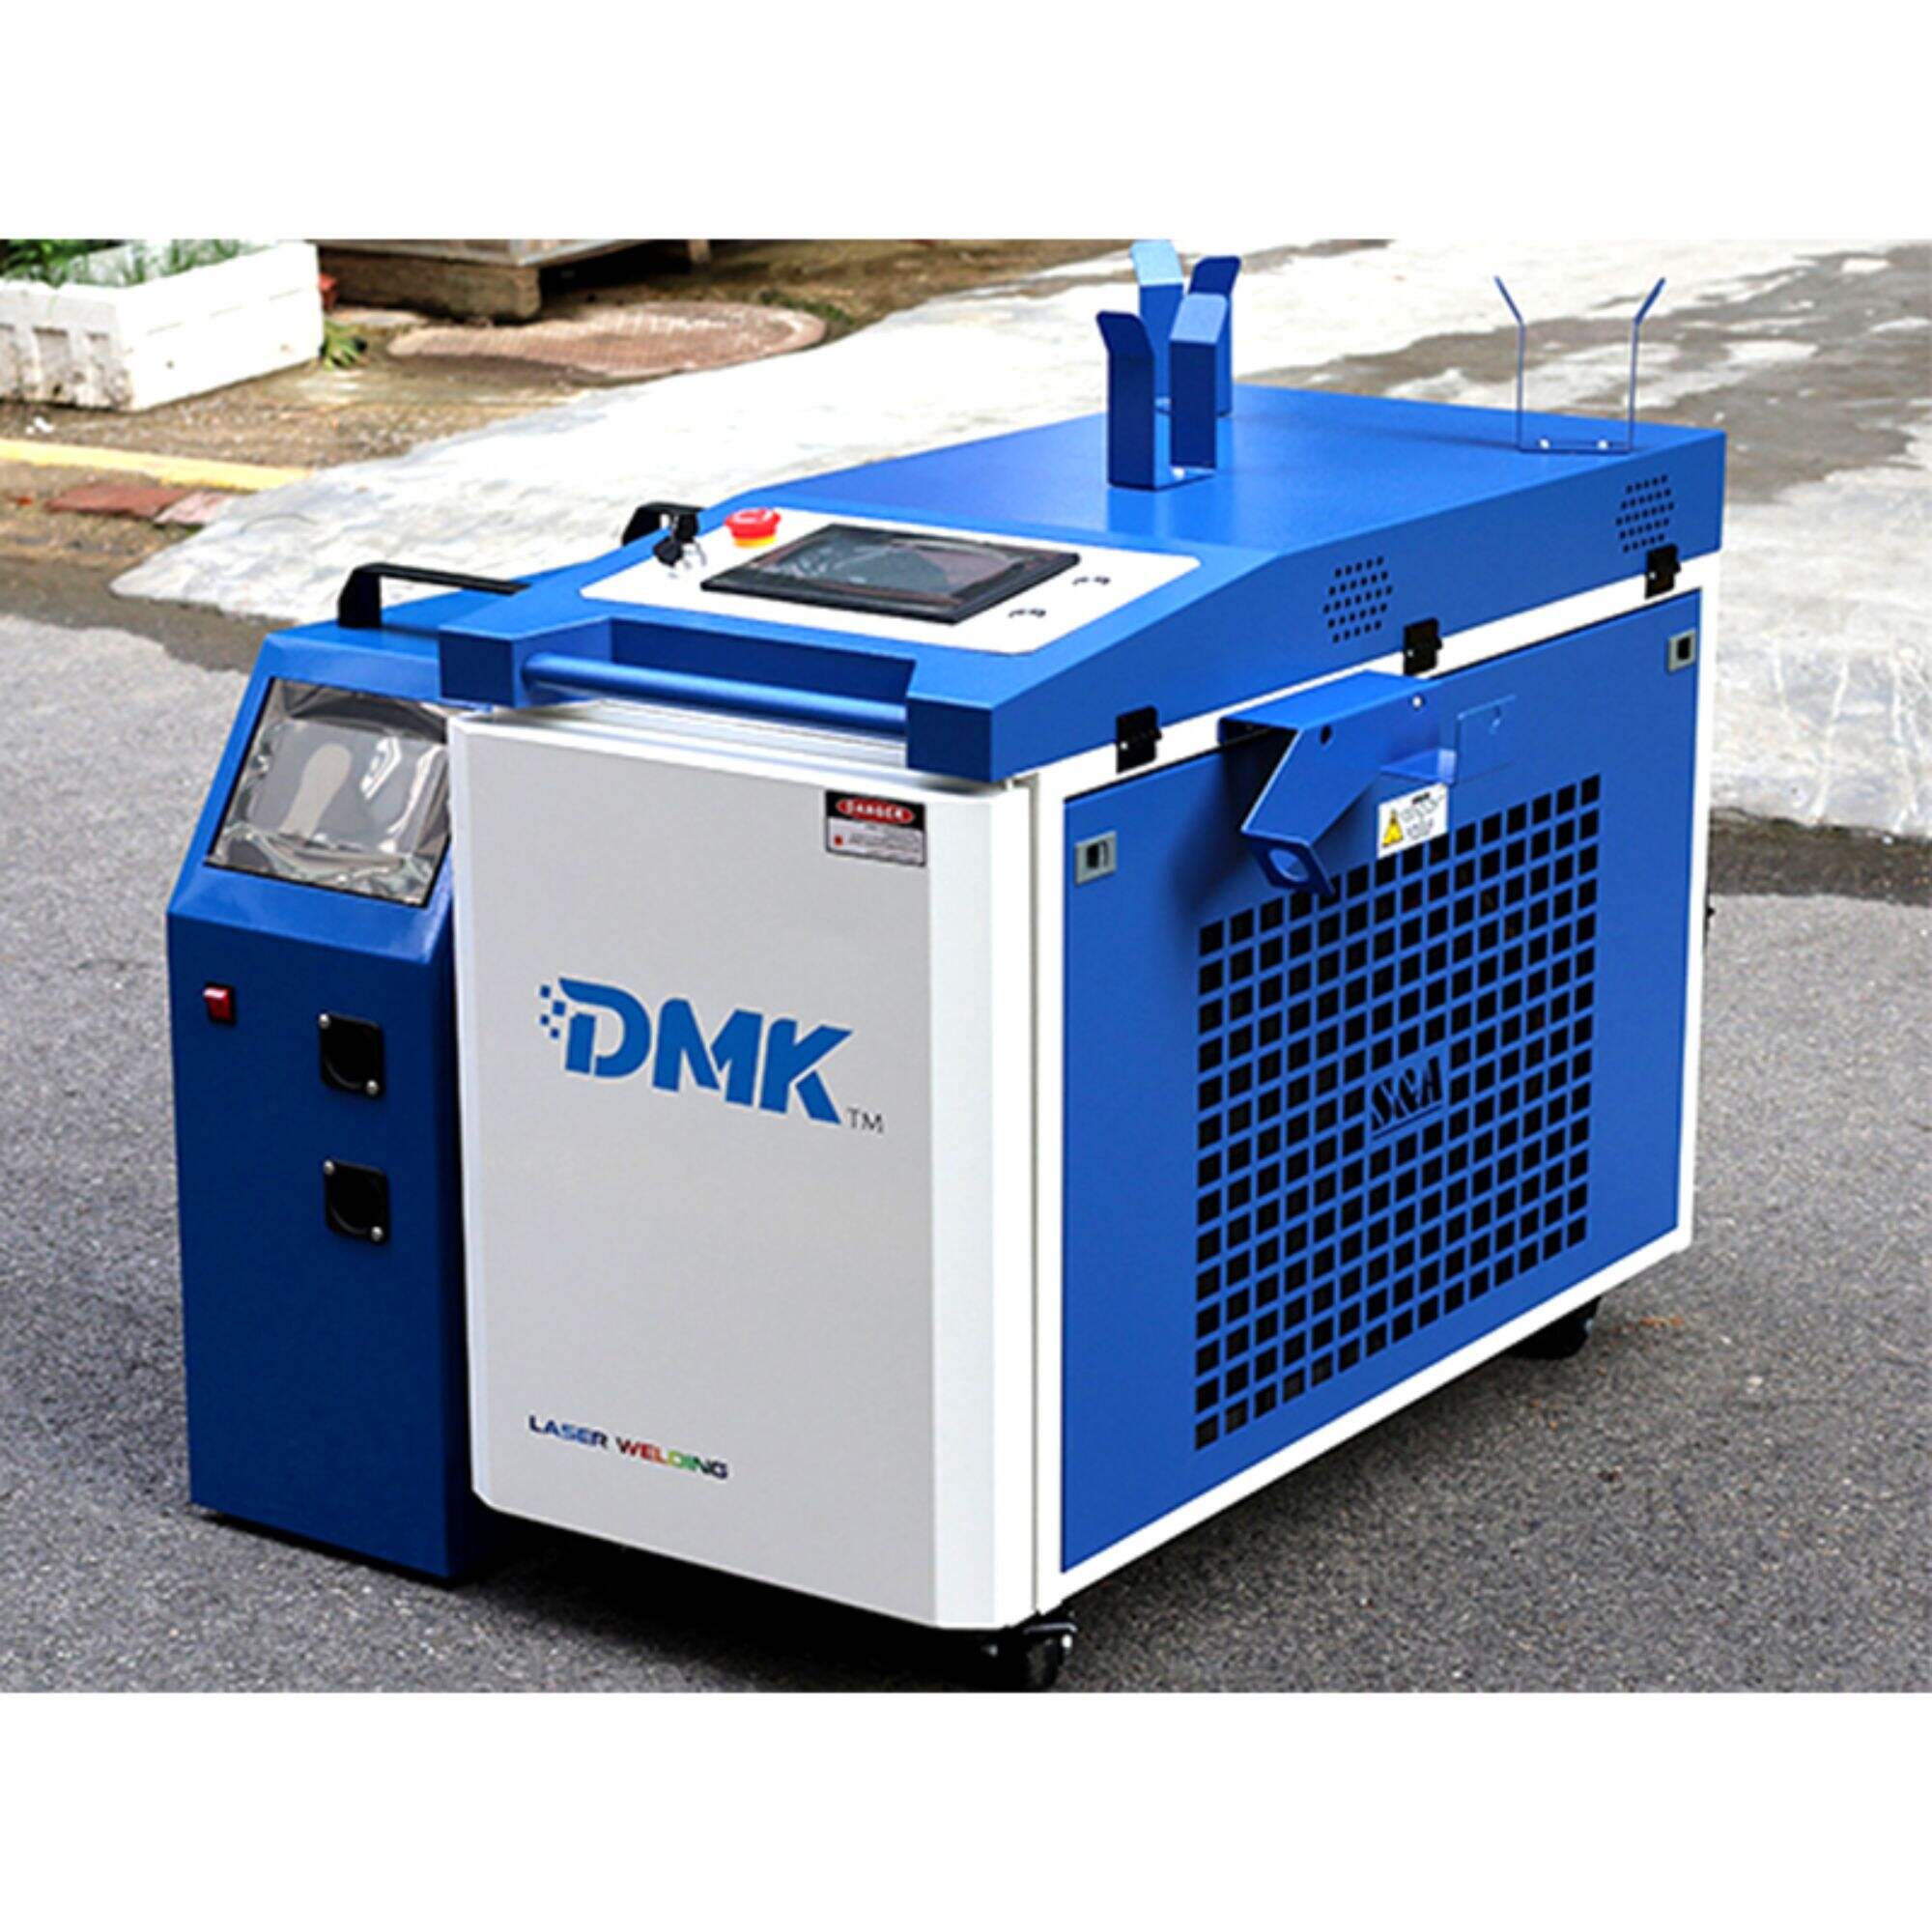 DMK MINI Integrated Handheld Fiber Laser Welding Machine With Wire Feeder